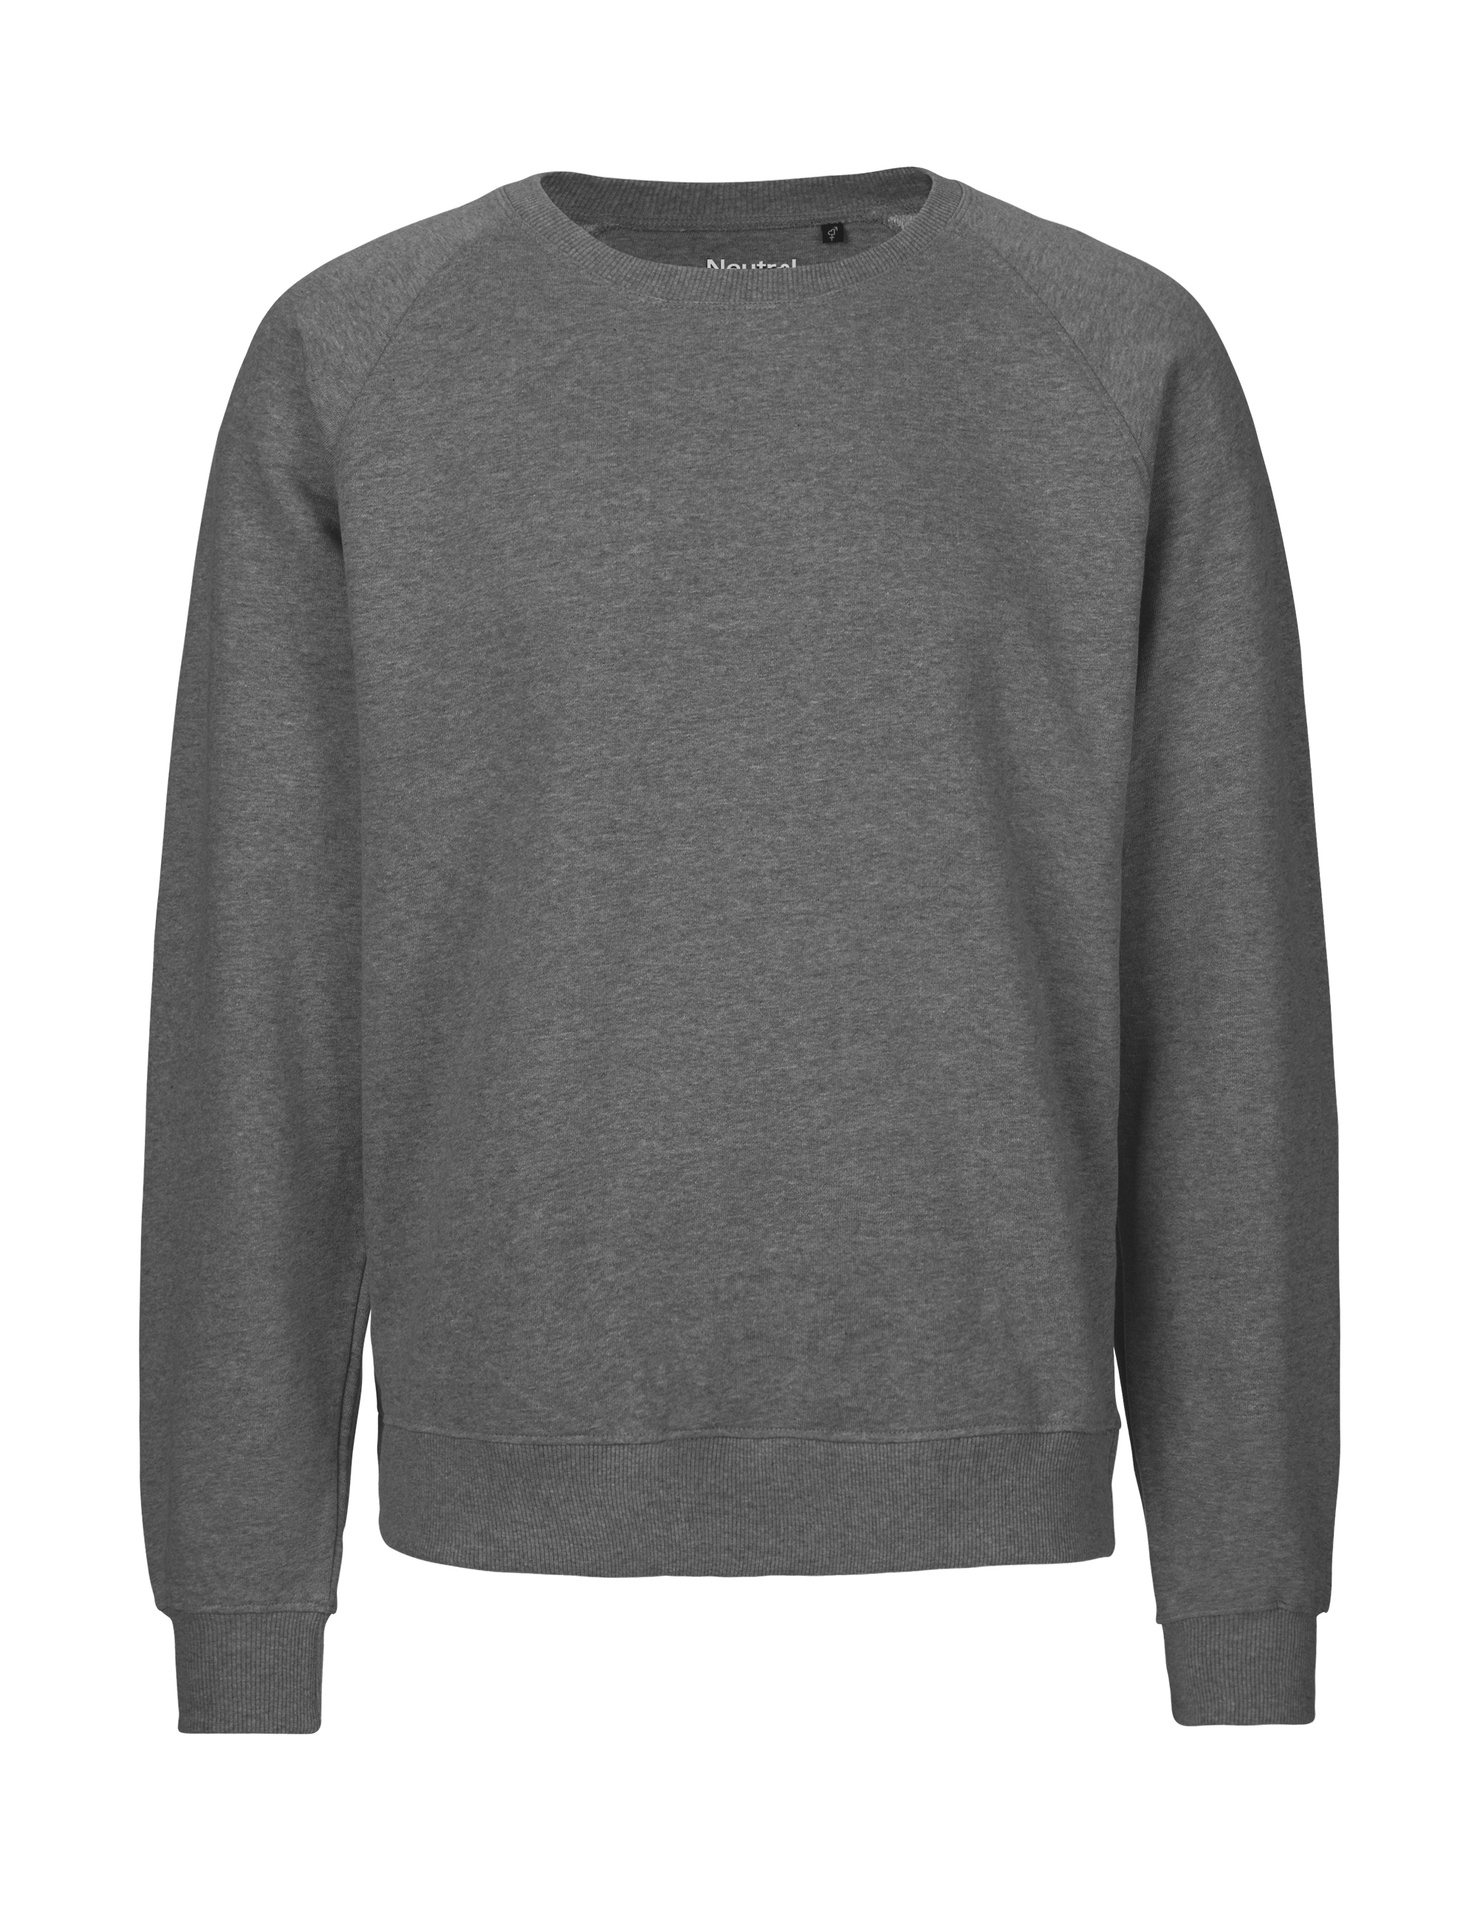 [PR/02701] Unisex Sweatshirt (Dark Heather 08, XL)